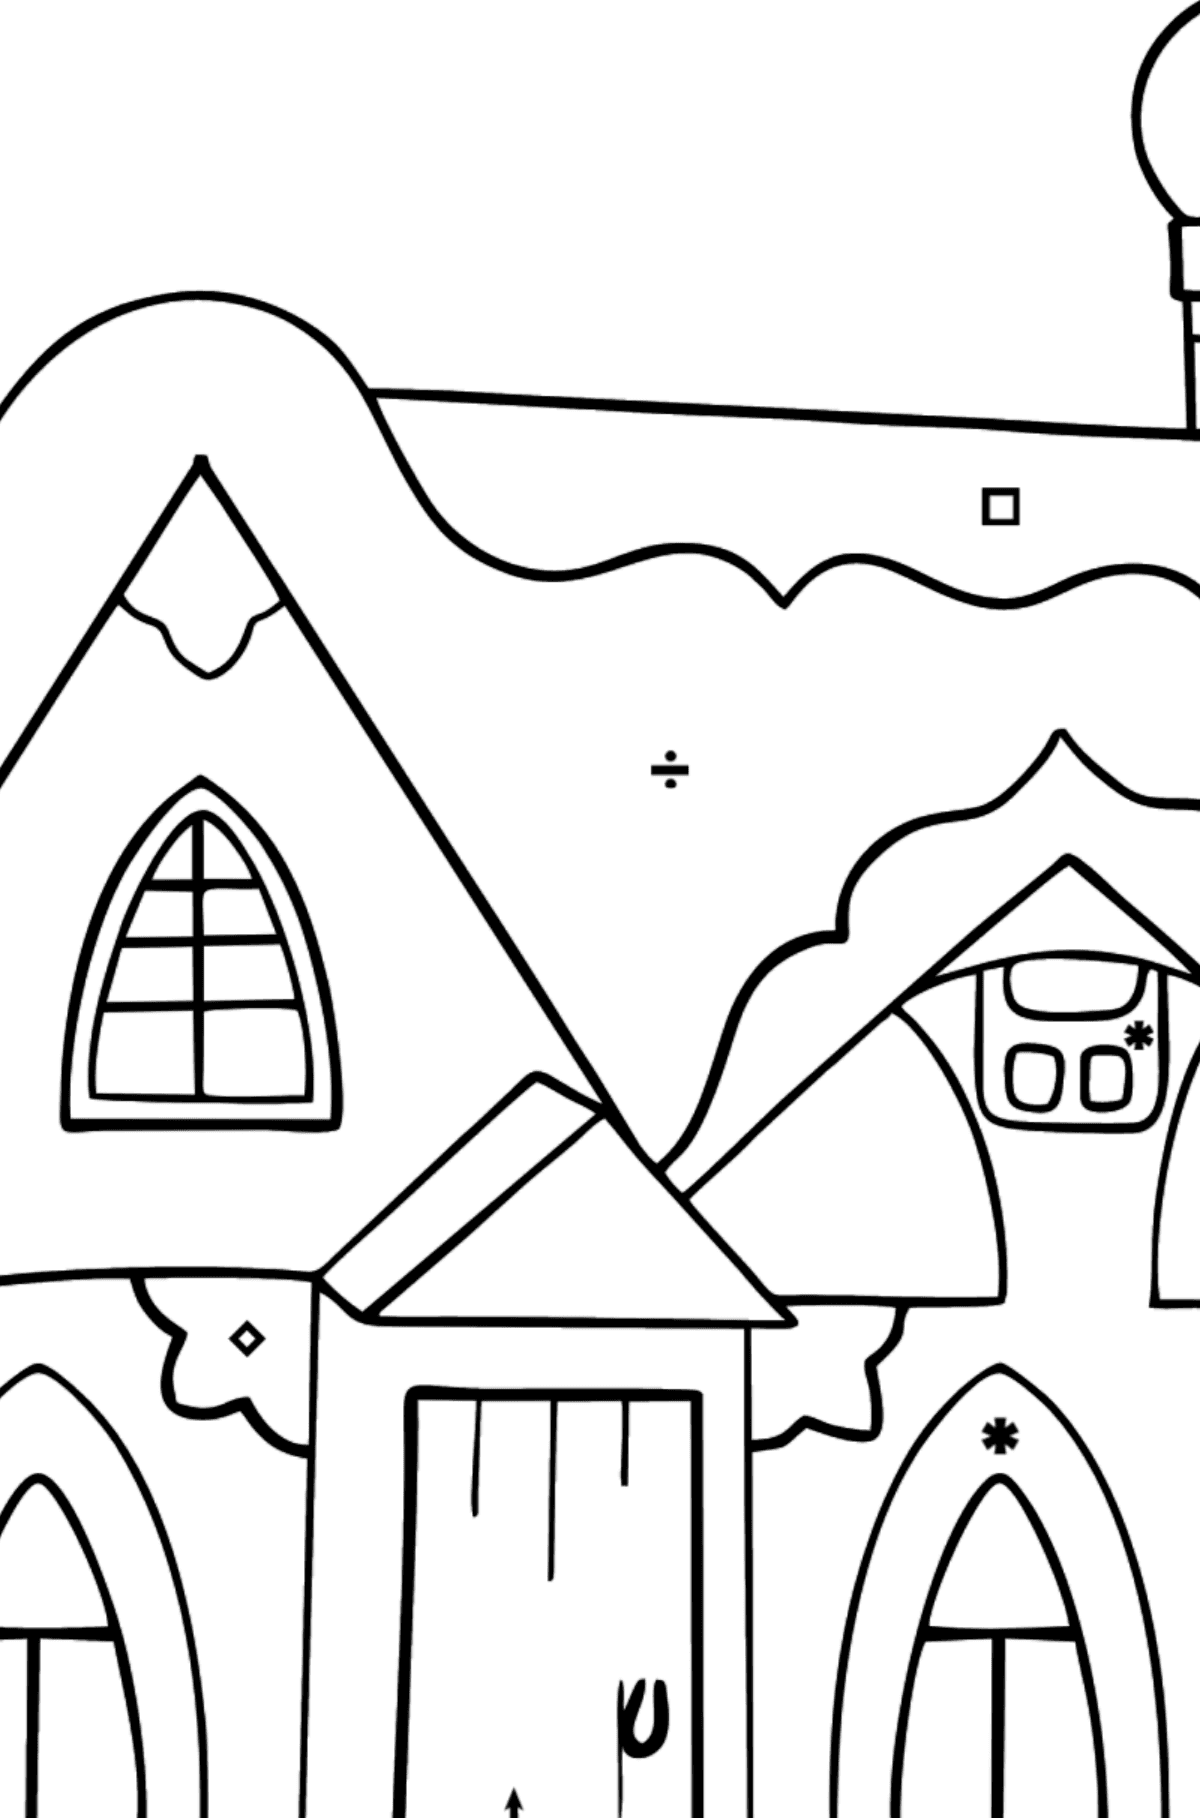 Tegning til fargelegging eventyrhus (enkelt) - Fargelegge etter symboler for barn